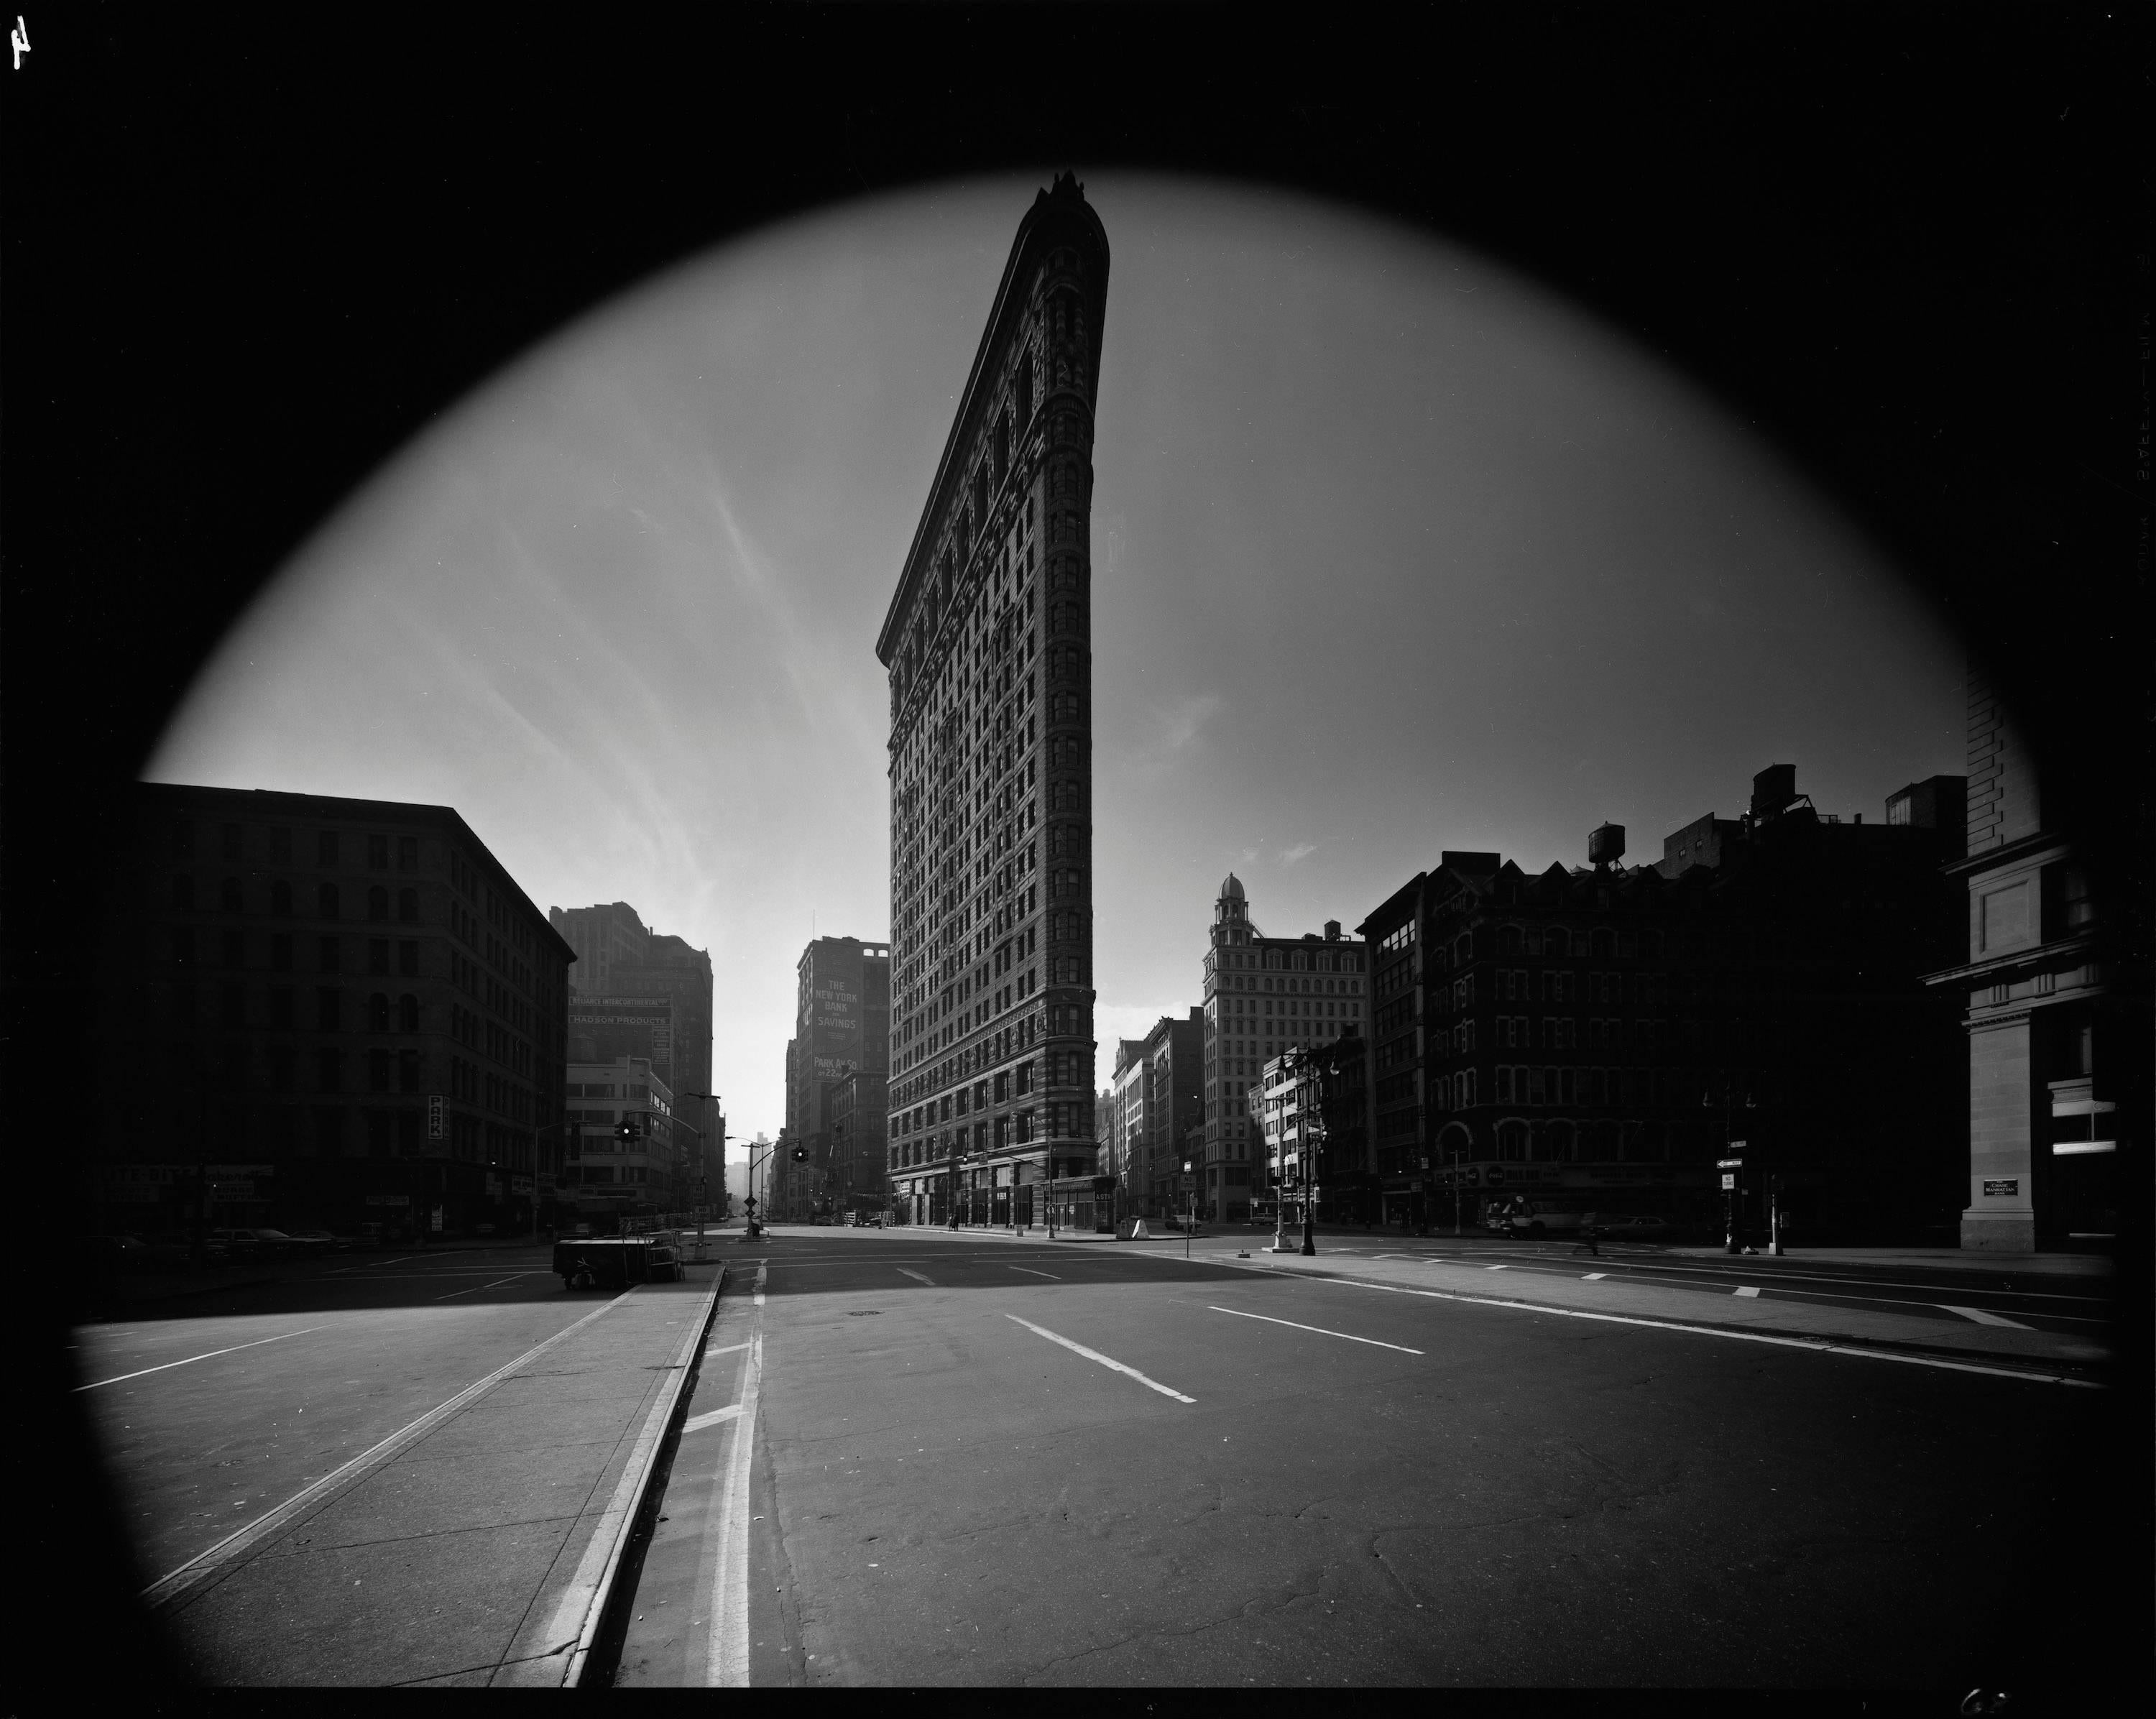 Flatiron Building, New York City, USA, 1969 - Elliott Erwitt (Noir et blanc)
Signé, inscrit avec le titre et daté sur l'étiquette de l'artiste qui l'accompagne
Tirage à la gélatine argentique, imprimé ultérieurement

Disponible en quatre tailles